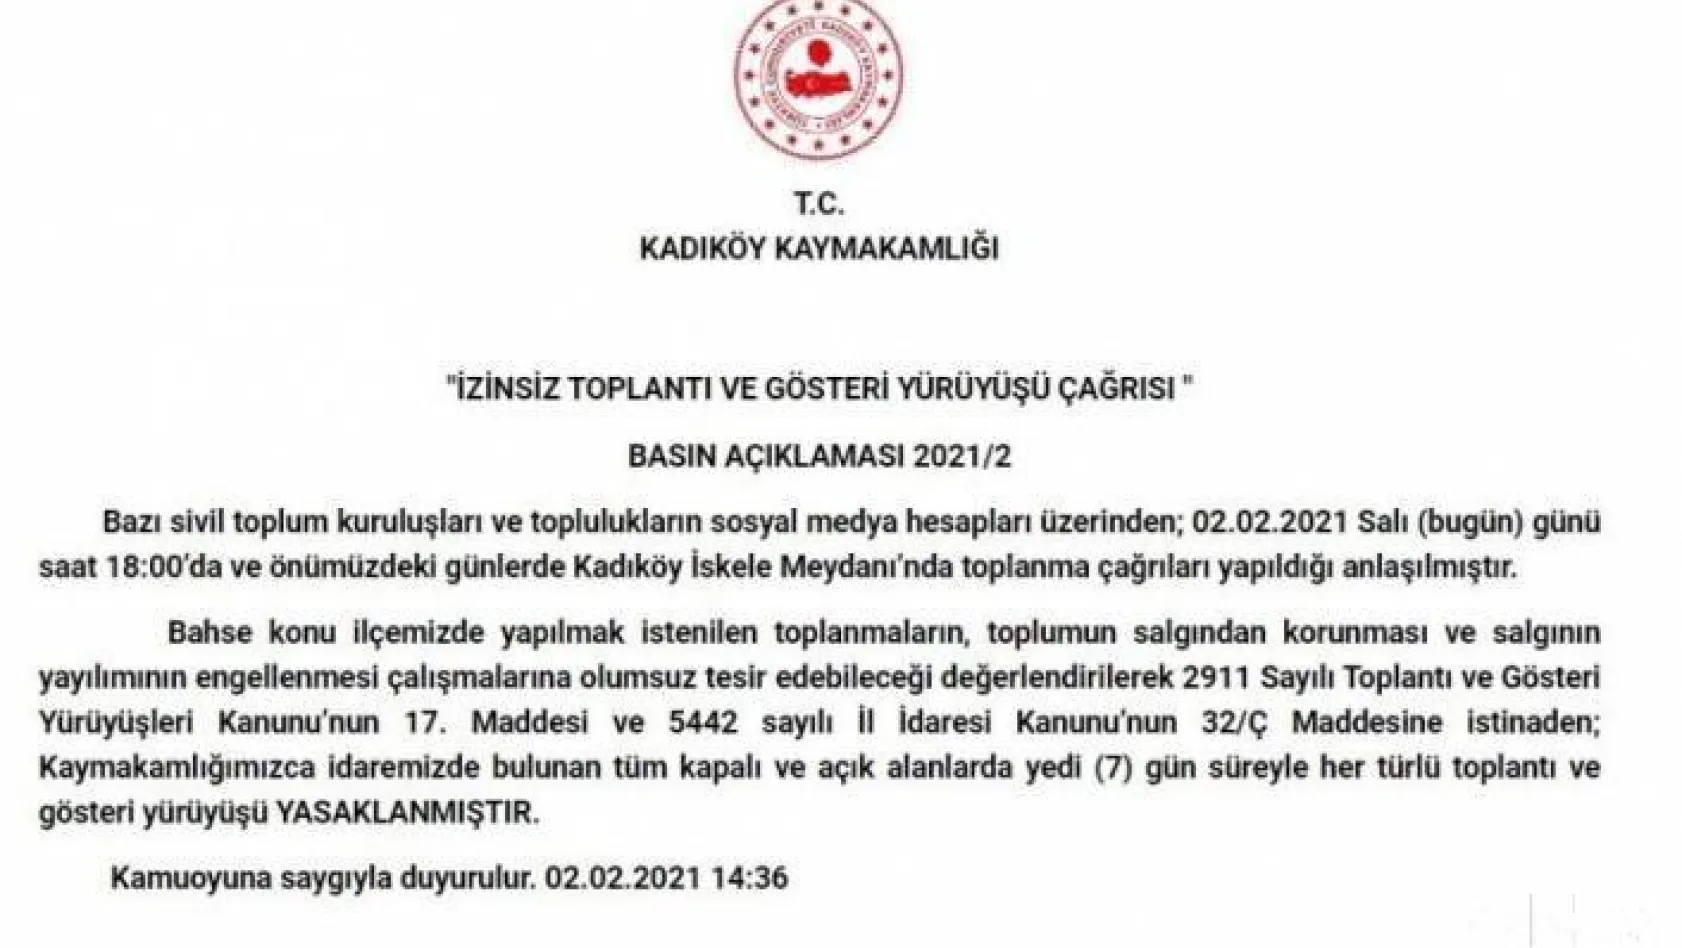 Kadıköy Kaymakamlığı'ndan '7 günlük yasak' açıklaması